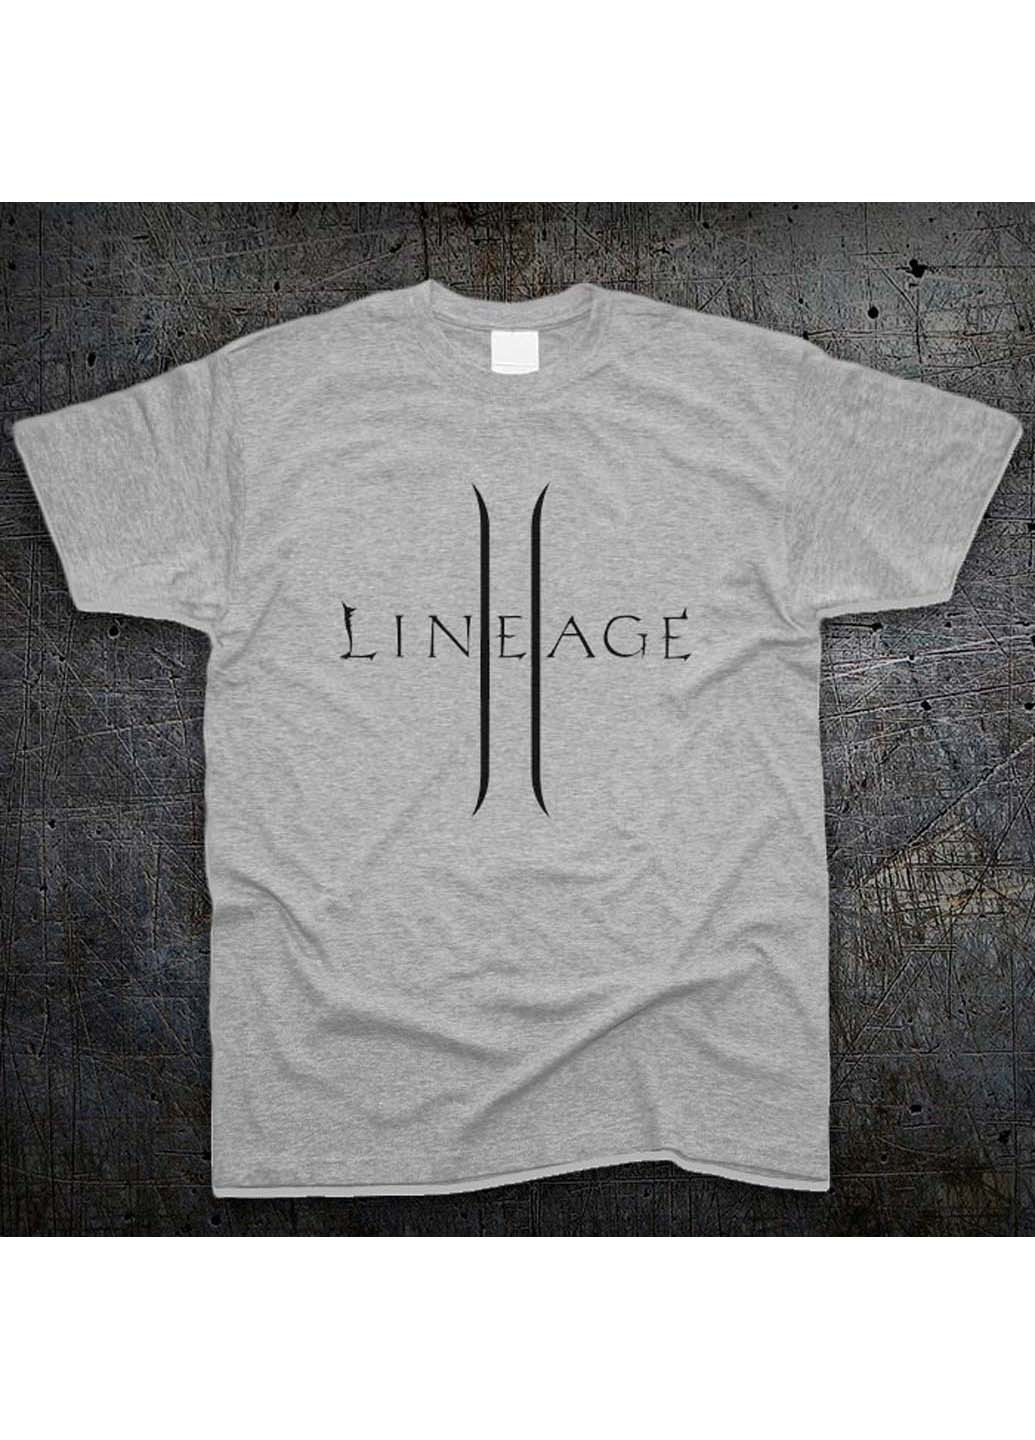 Серая футболка Fruit of the Loom Логотип Линейдж 2 Logo Lineage 2